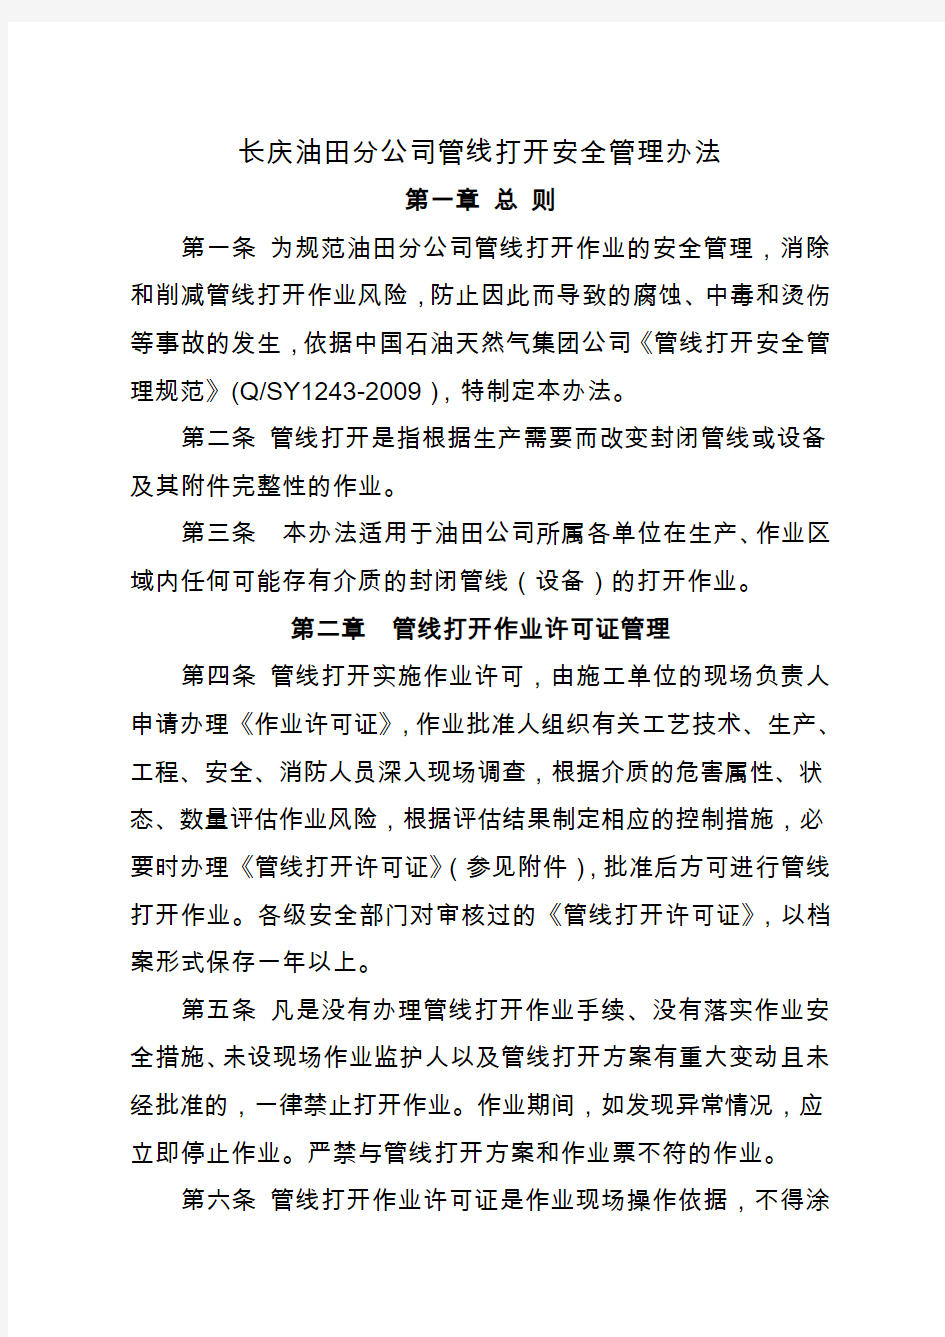 6-长庆油田分公司管线打开安全管理办法